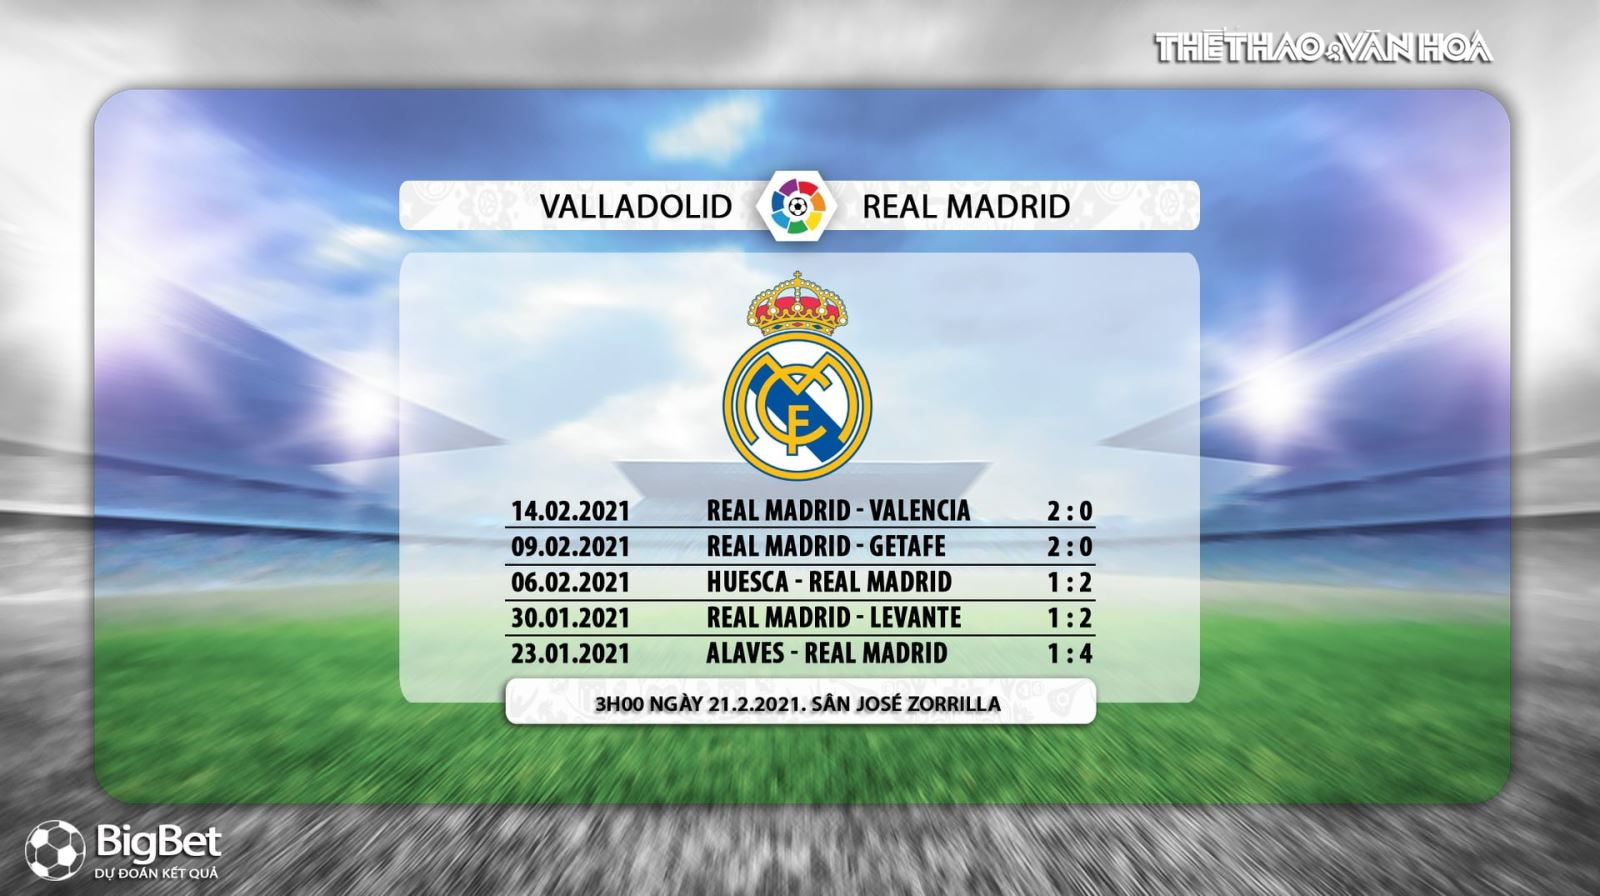 Keo nha cai, Nhận định kết quả, Valladolid vs Real Madrid, BĐTV trực tiếp bóng đá Tây Ban Nha, xem trực tiếp bóng đá La Liga, truc tiep bong da Tay Ban Nha, kèo Real Madrid